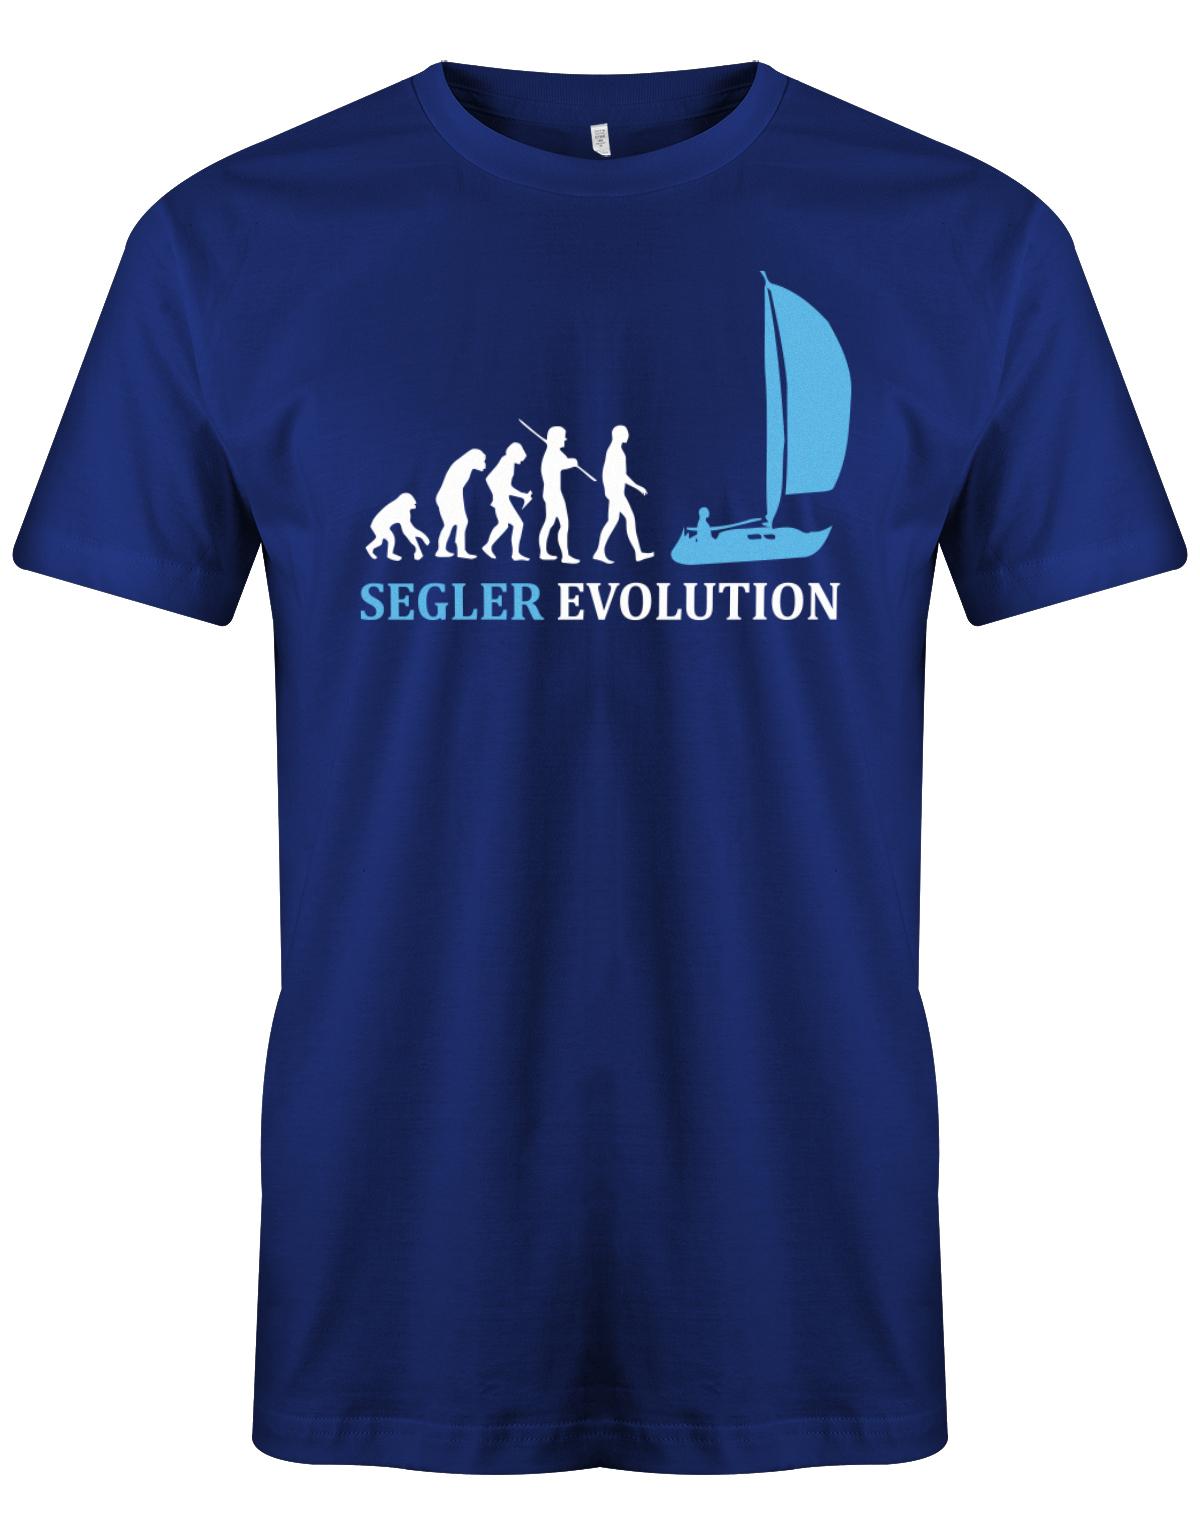 Das Segler t-shirt bedruckt mit "Die Segler Revolution vom Affen zum Segler". Royalblau